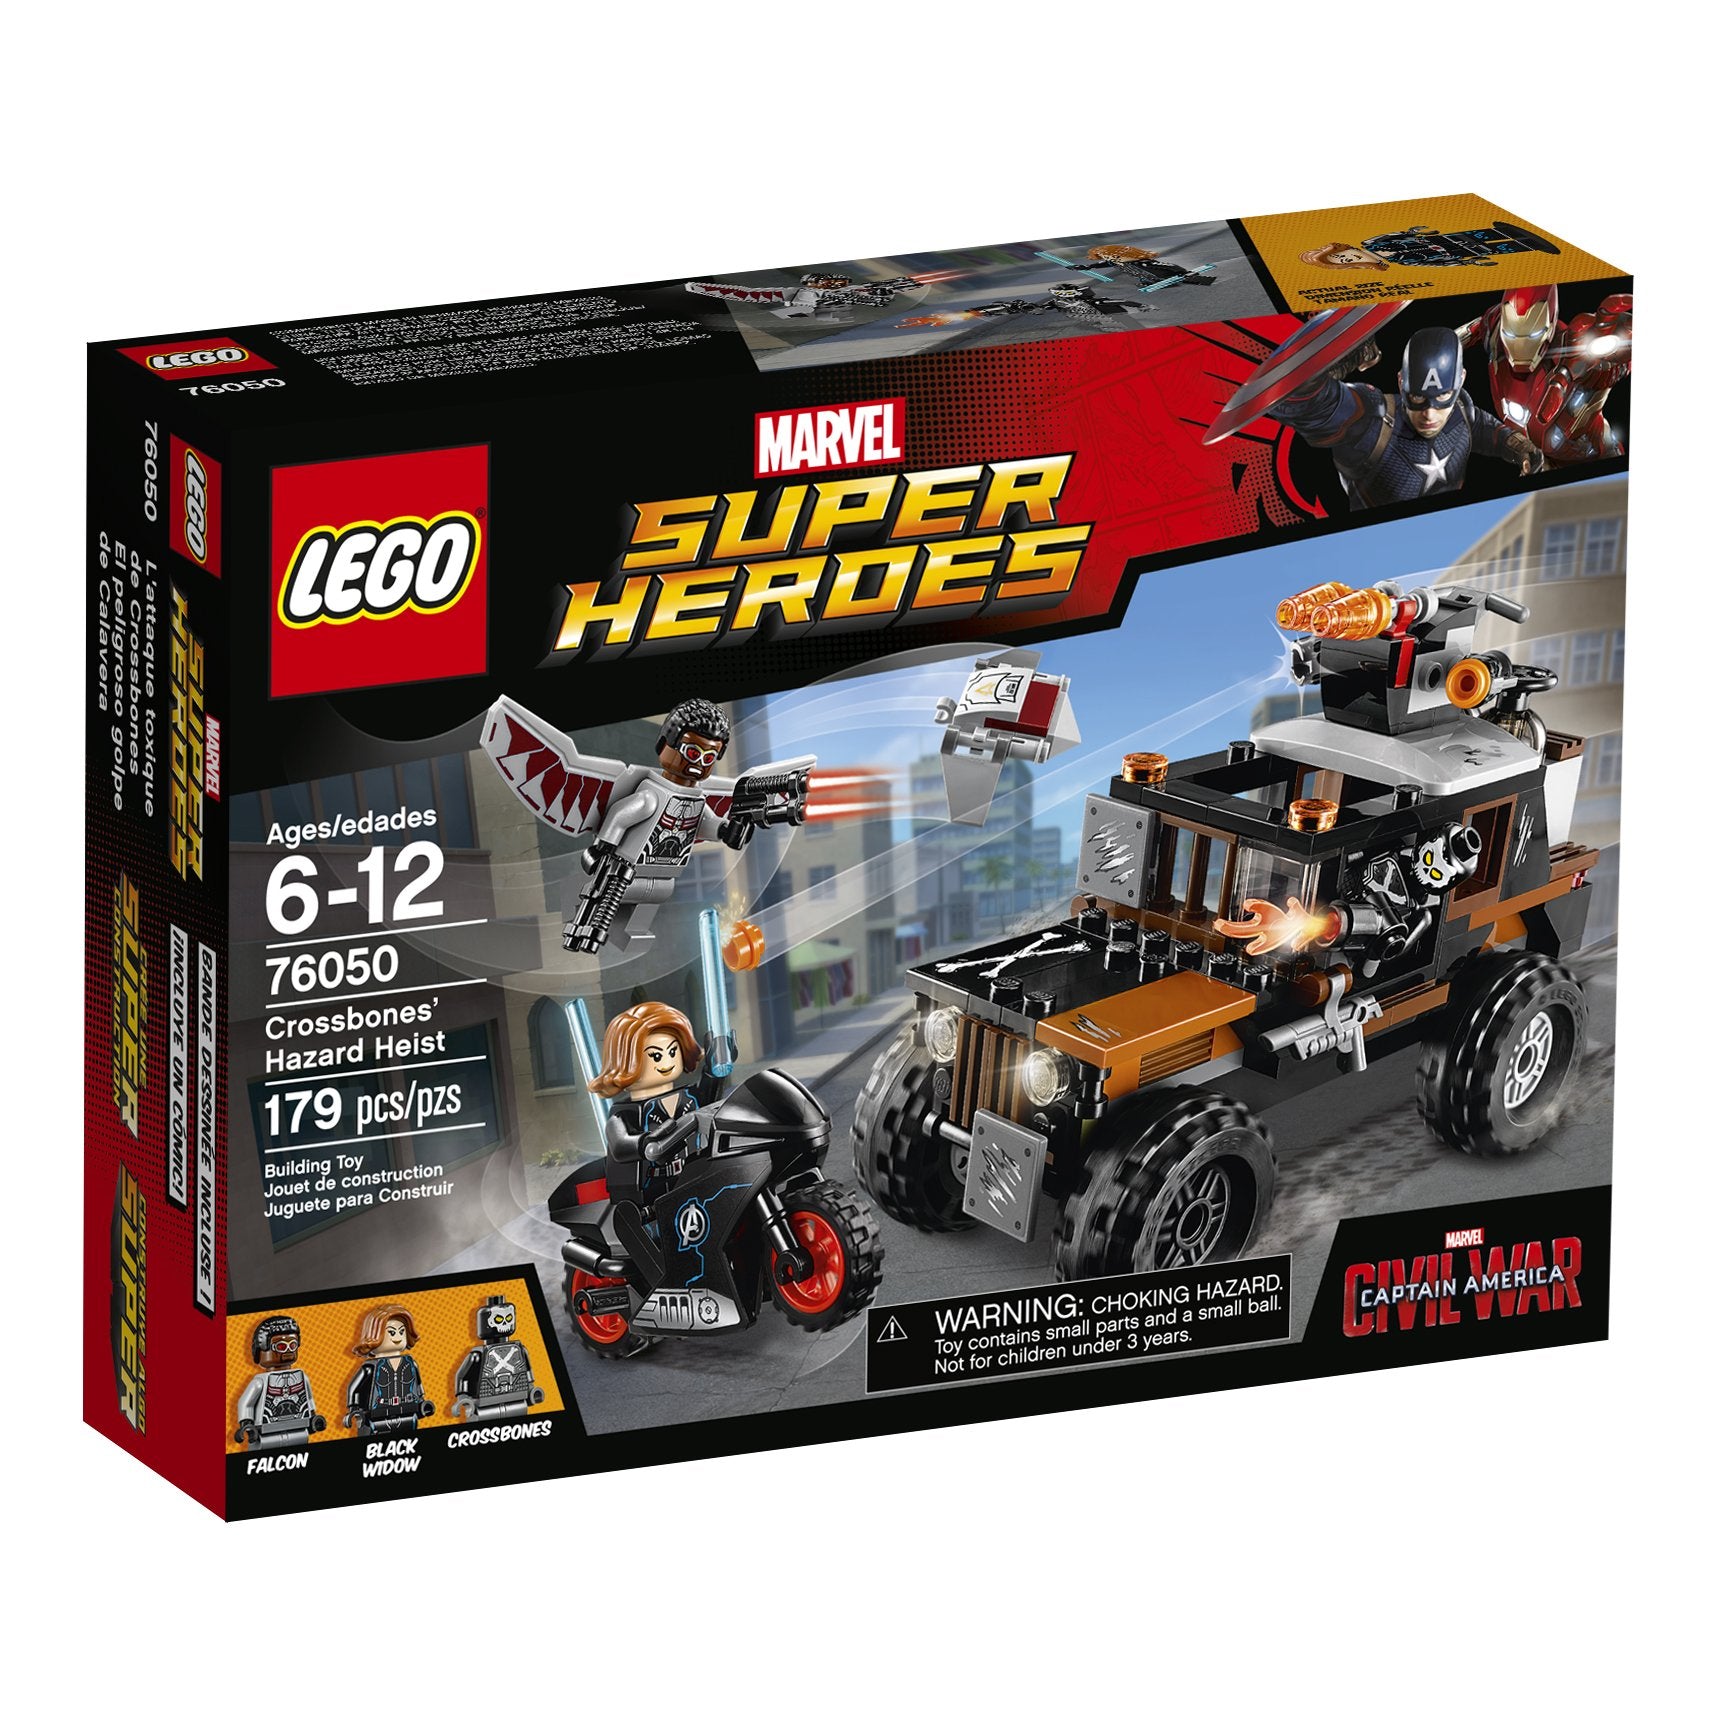 LEGO Super Heroes Crossbones Hazard Heist 76050 (Like New, Open Box)